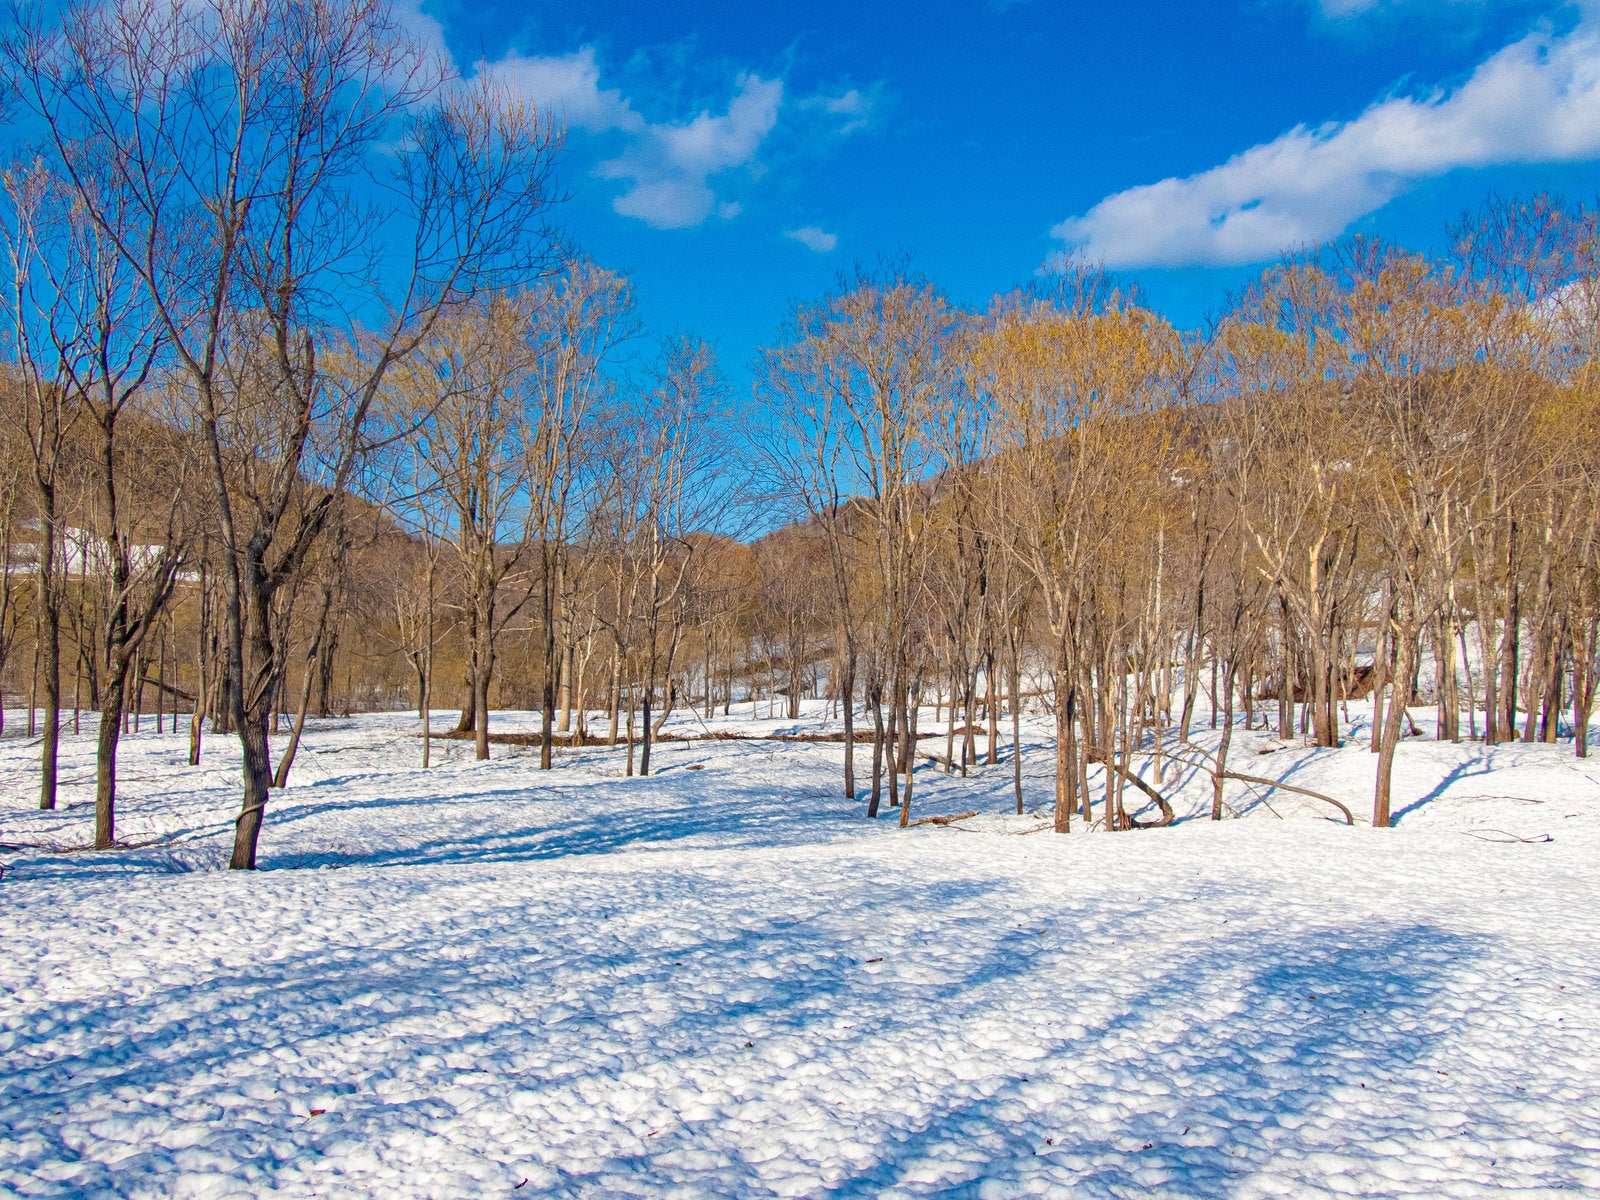 「雪原に伸びる木々の影」の写真